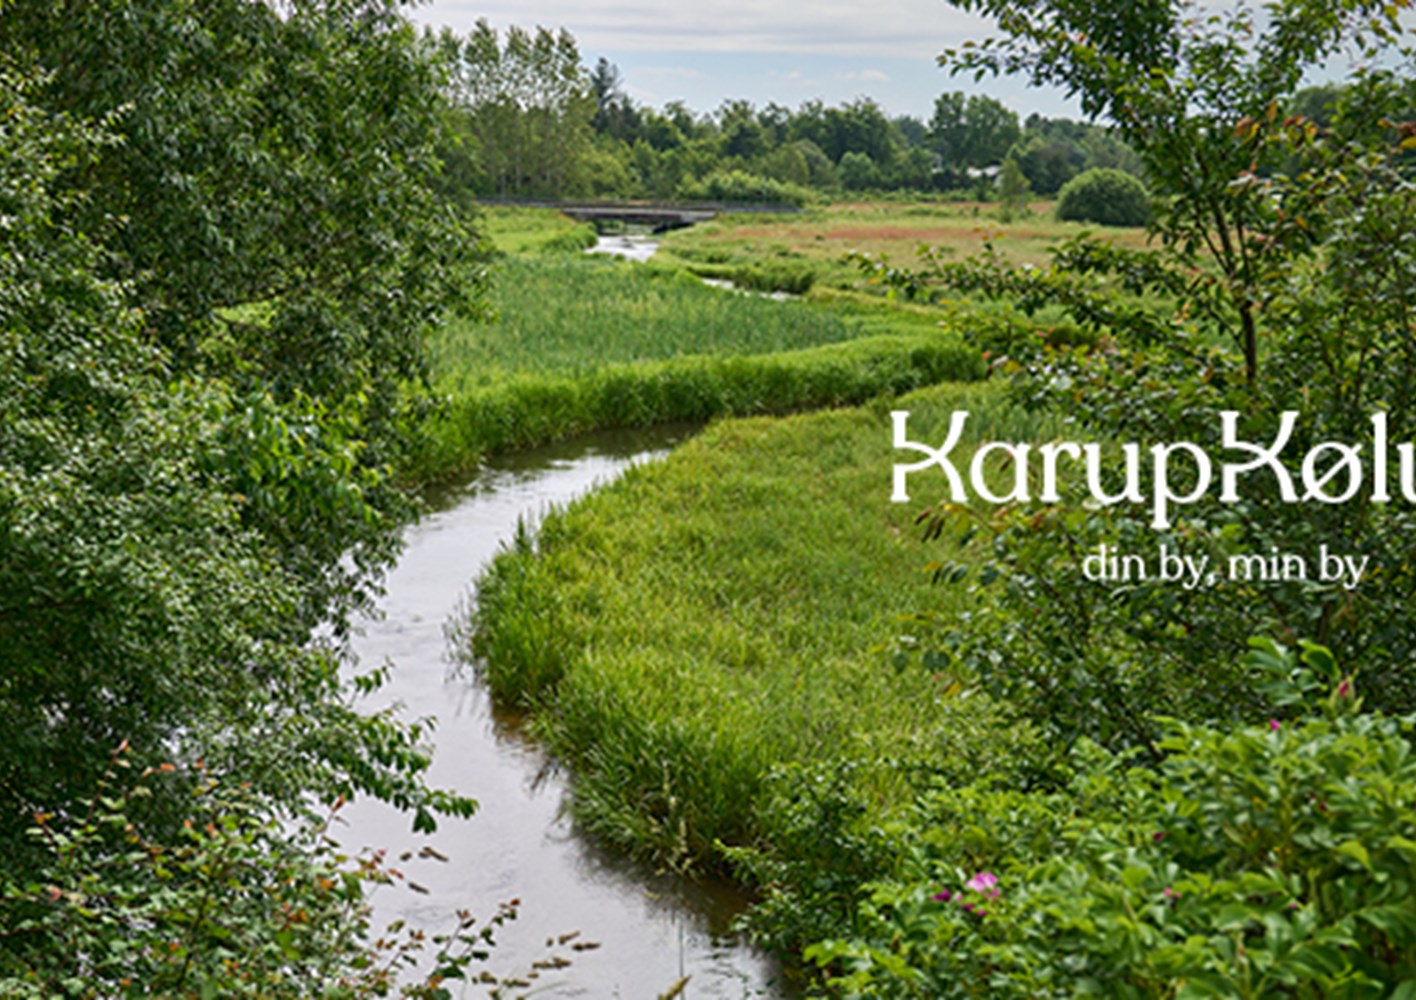 KarupKølvrå har blandt andet fået en ny Facebookside, der skal være med til at styrke den fælles identitet.